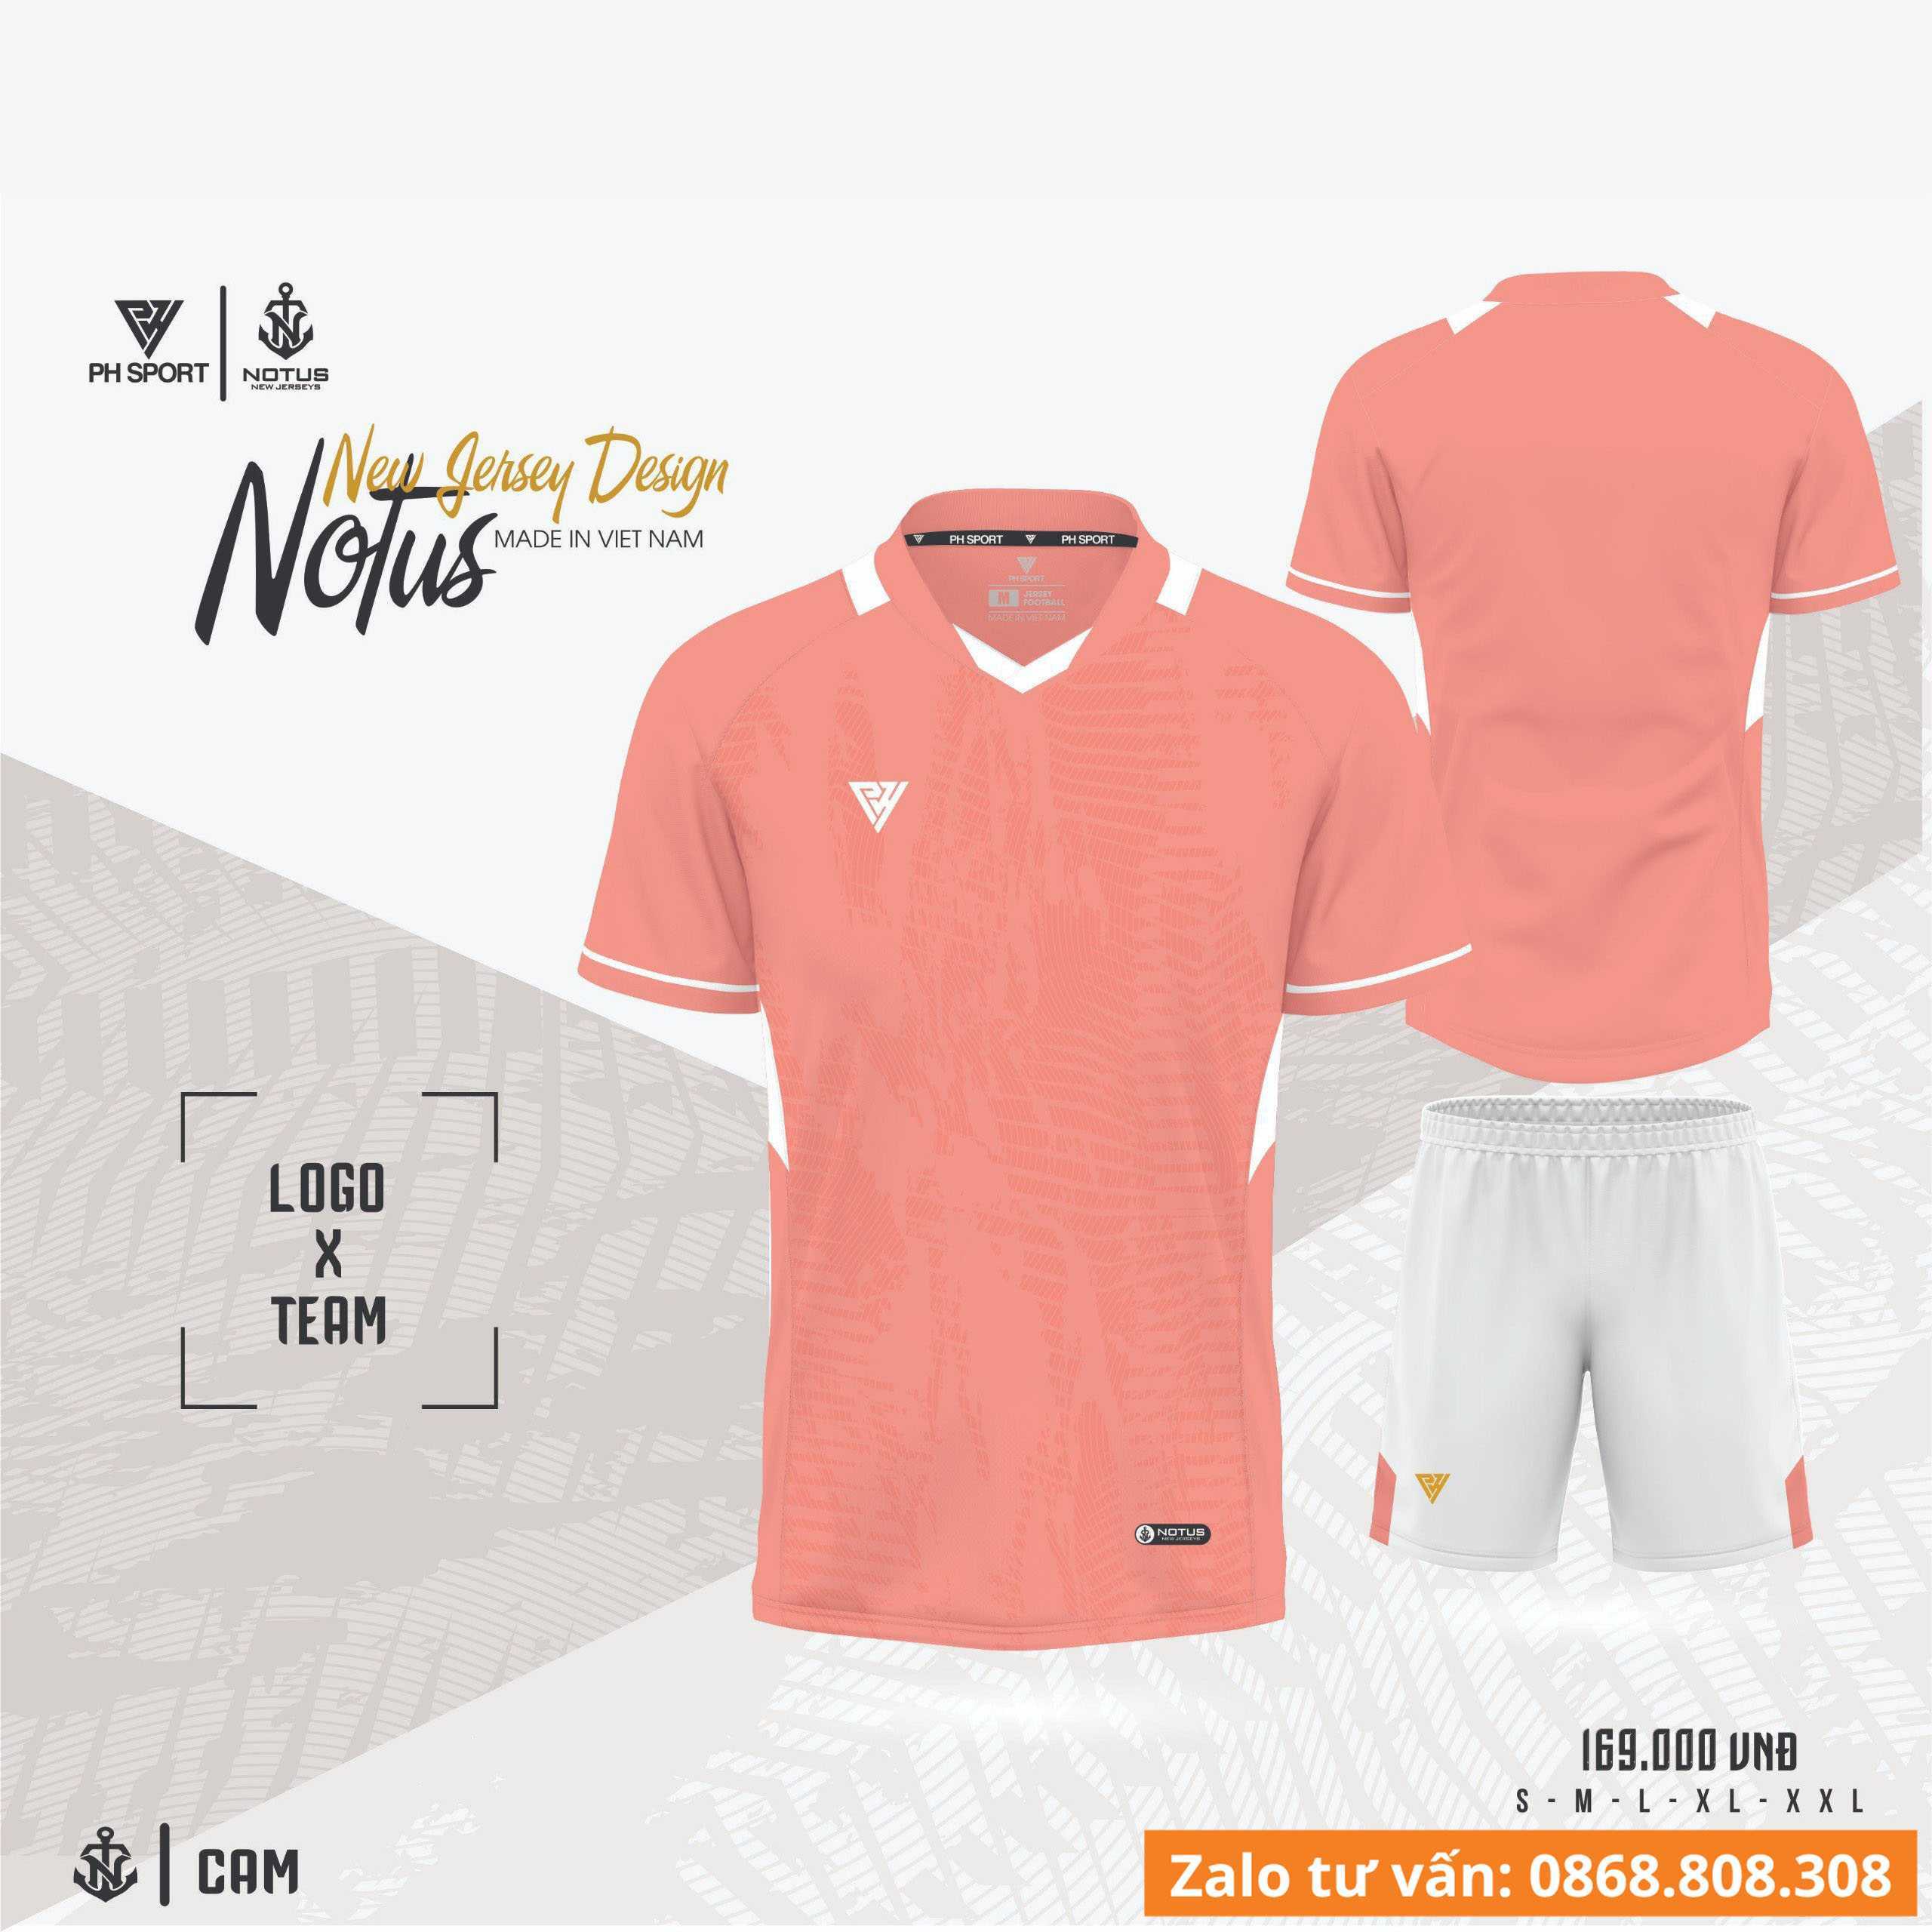 Bộ quần áo bóng đá phủi thiết kế áo đá banh mã Notus chính hãng S2 Sport nhiều màu cam hồng